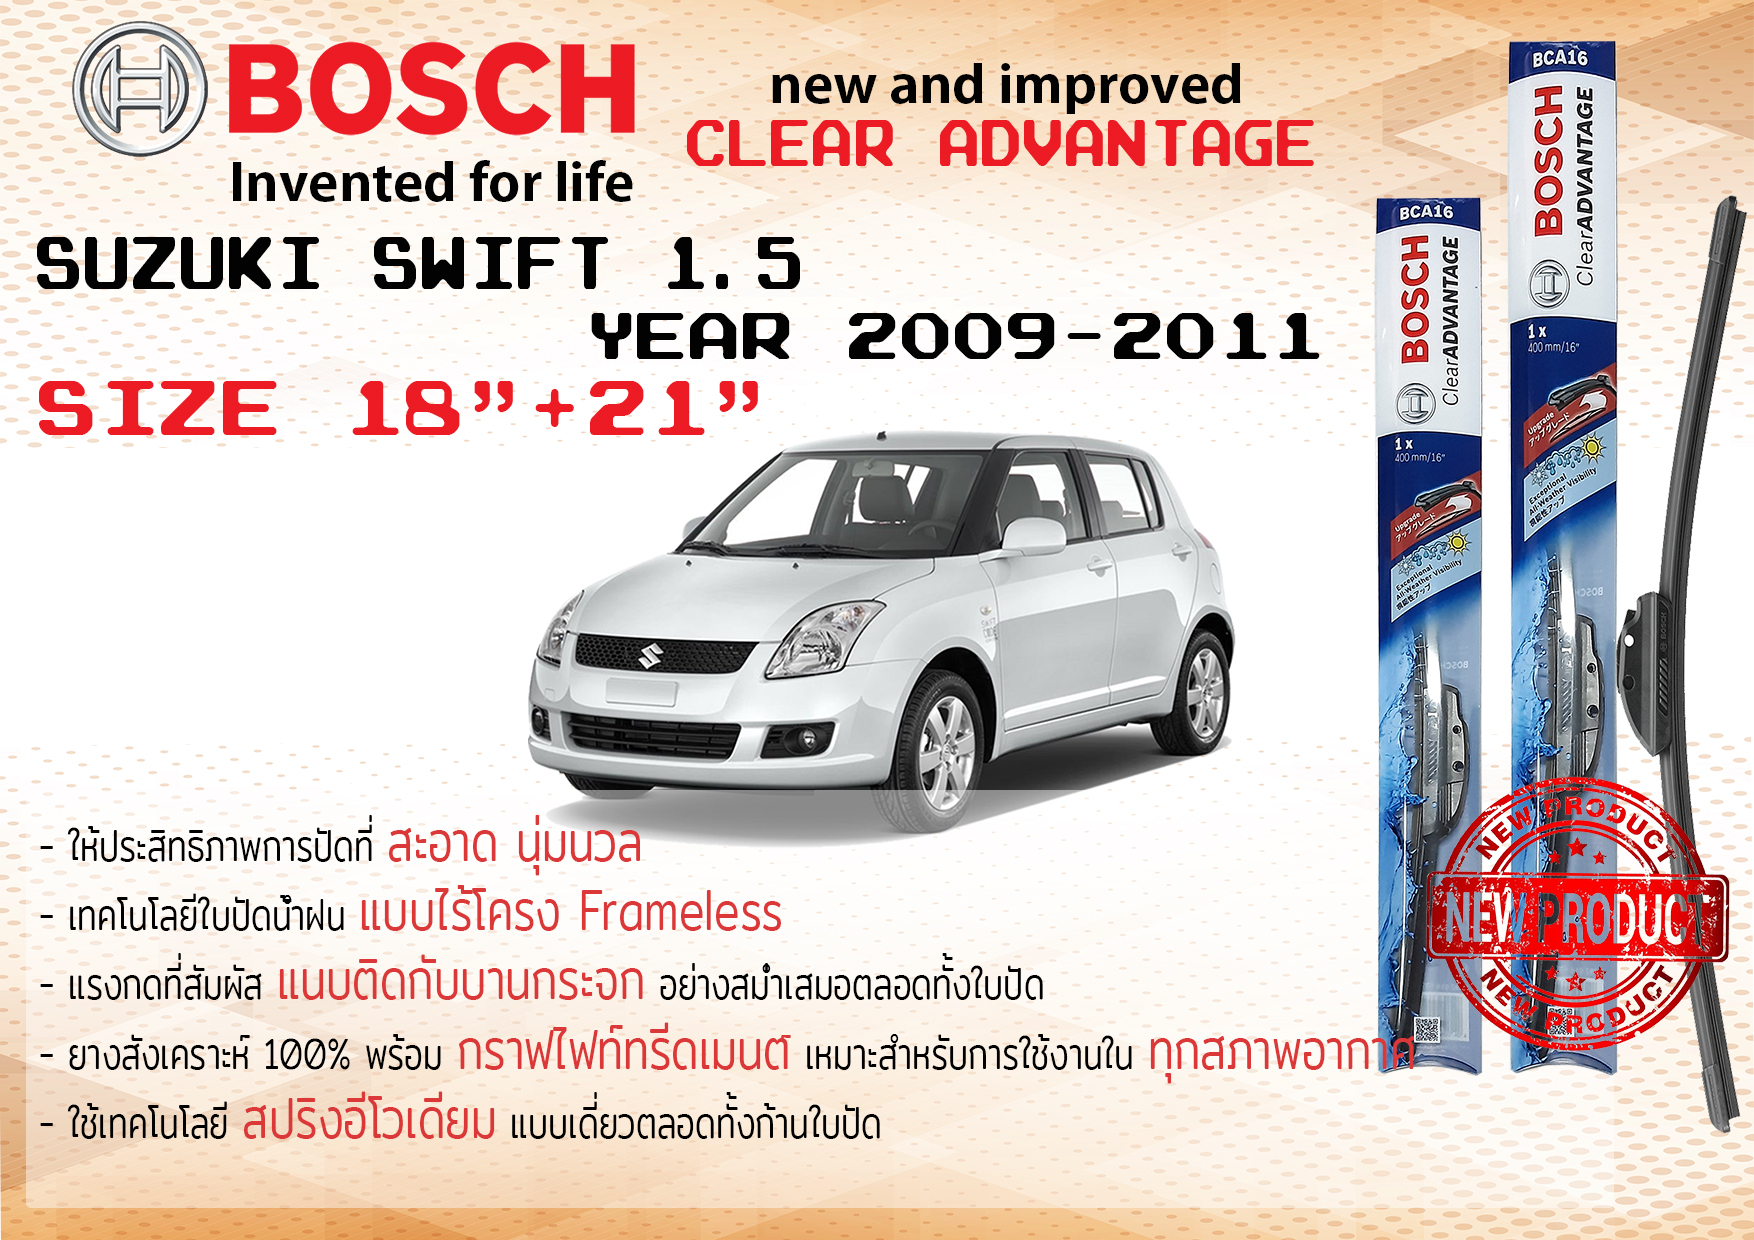 ใบปัดน้ำฝน คู่หน้า Bosch Clear Advantage frameless ก้านอ่อน ขนาด 18”+21” สำหรับรถ Suzuki SWIFT 1.5  ปี 2009-2011  ปี 09,10,11, 52,53,54